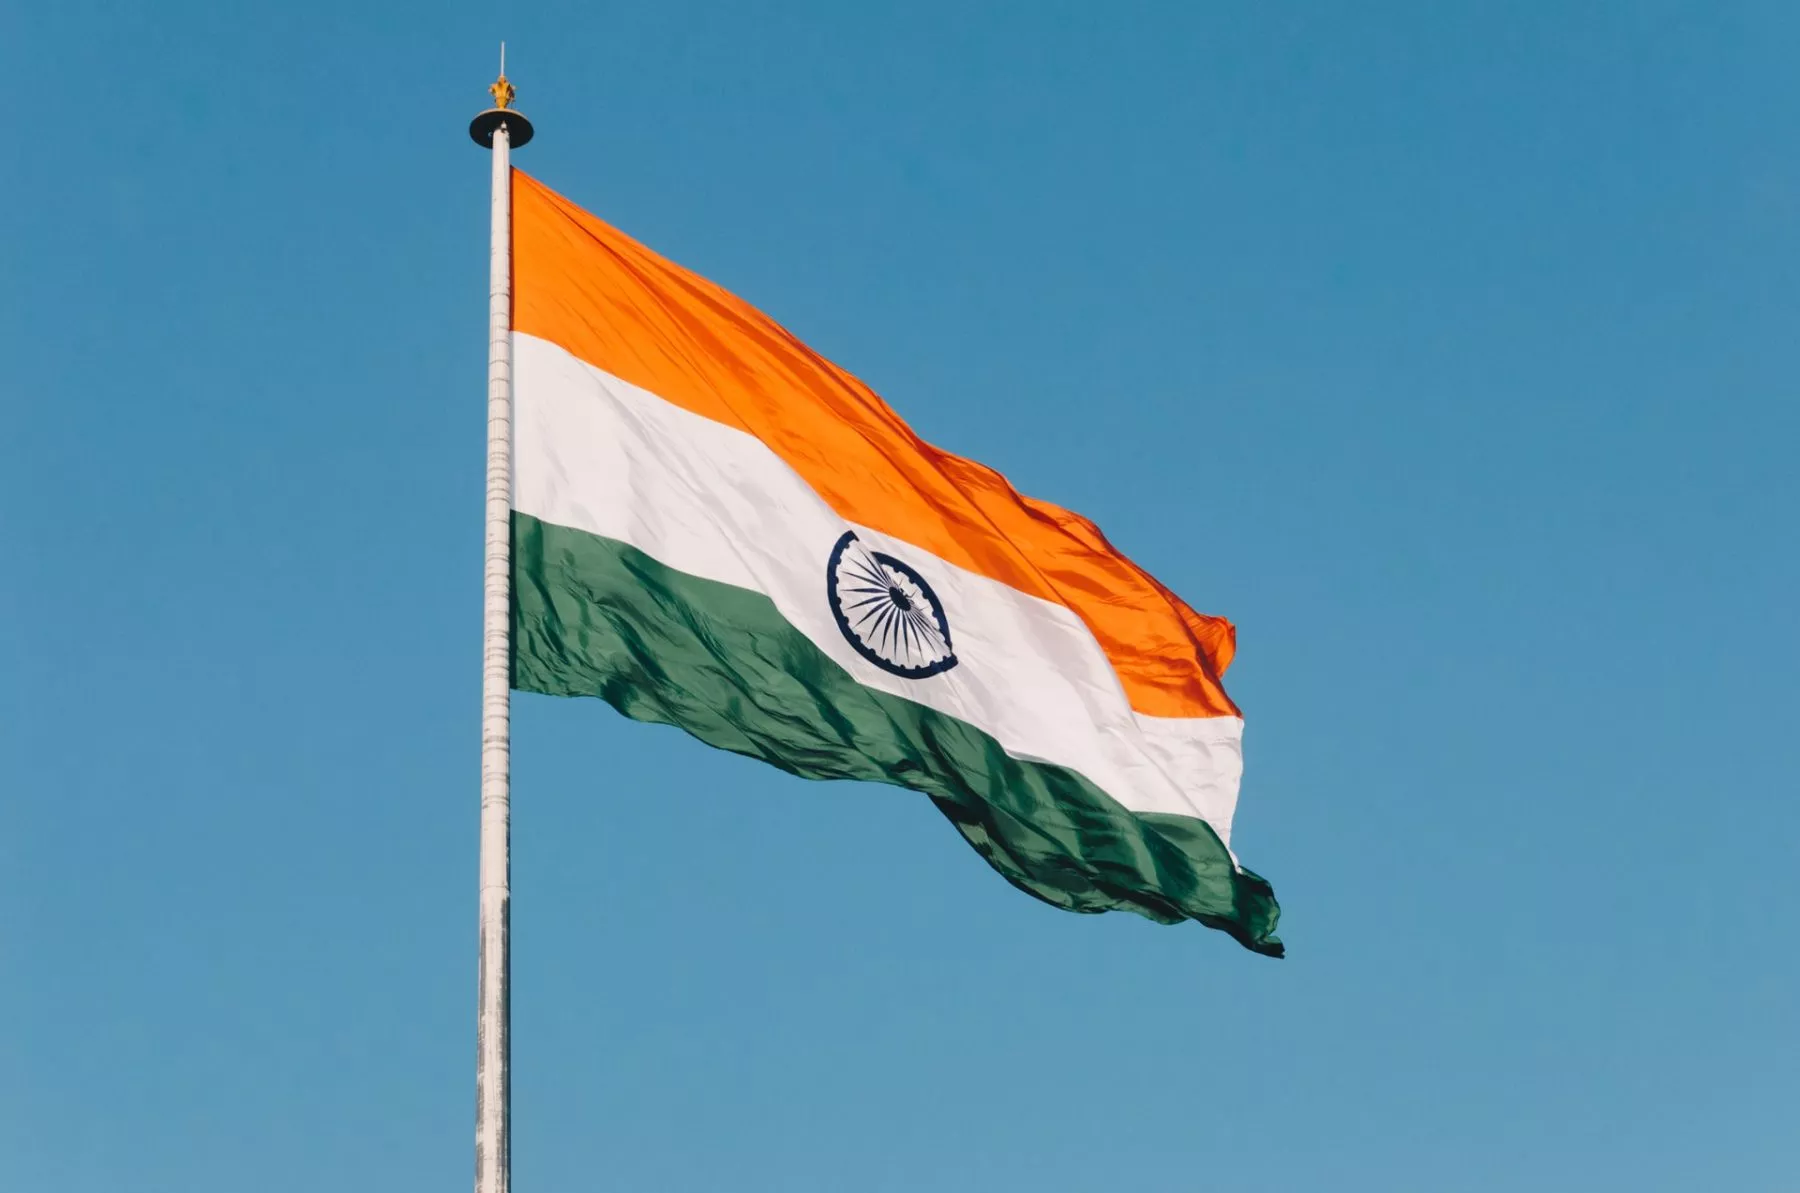 Centrale bank van India blijft kritisch over crypto